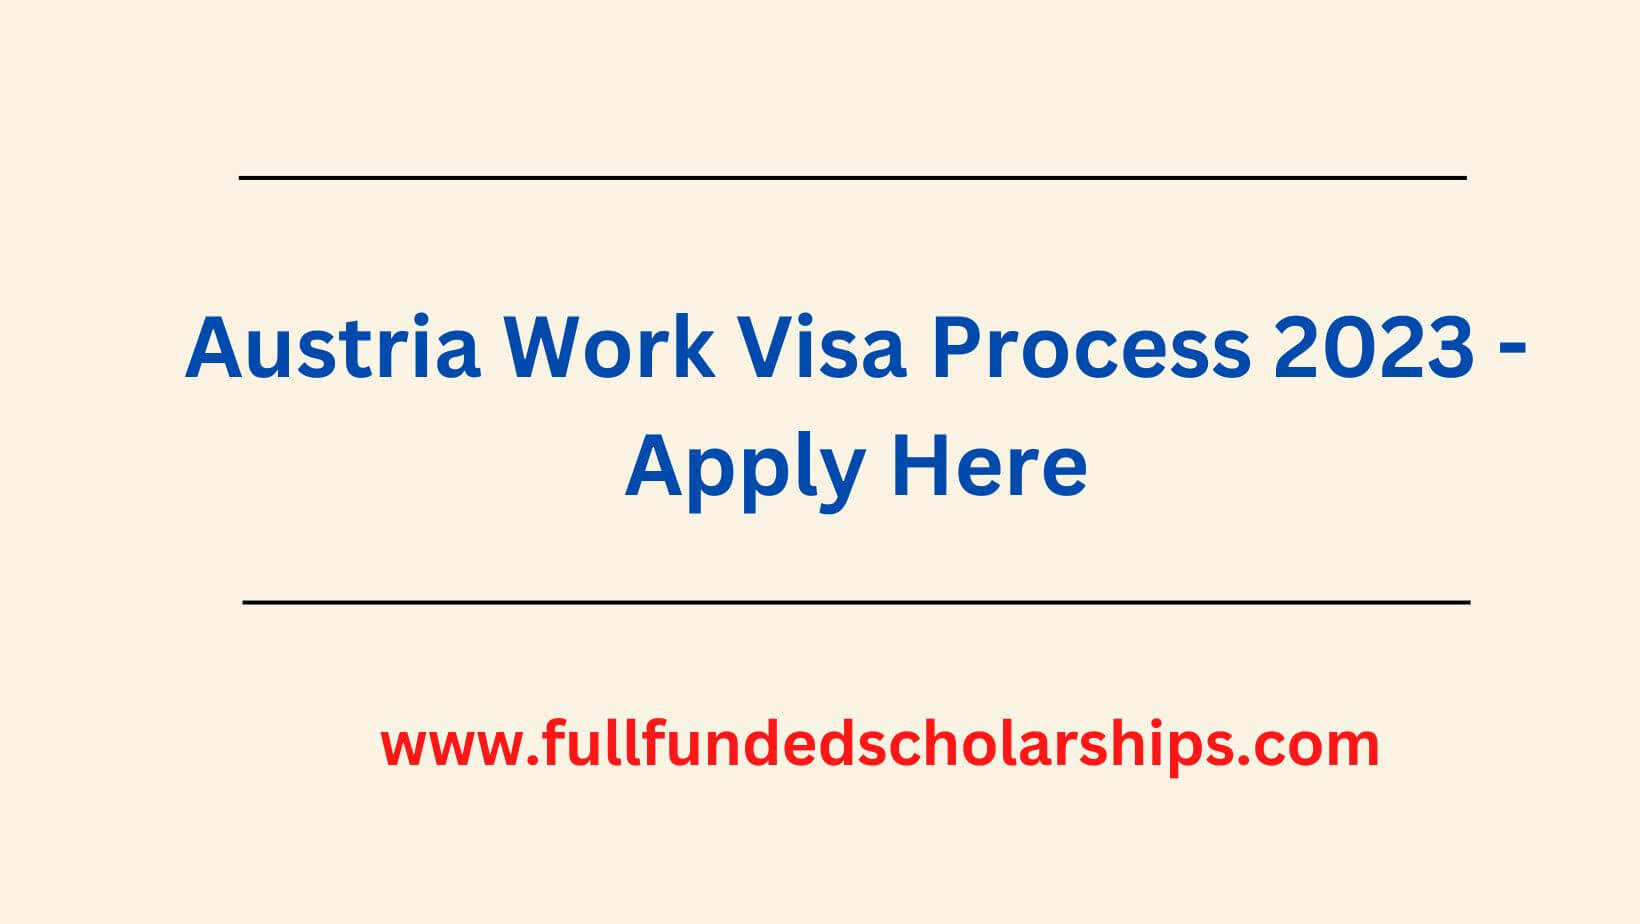 Austria Work Visa Process 2023